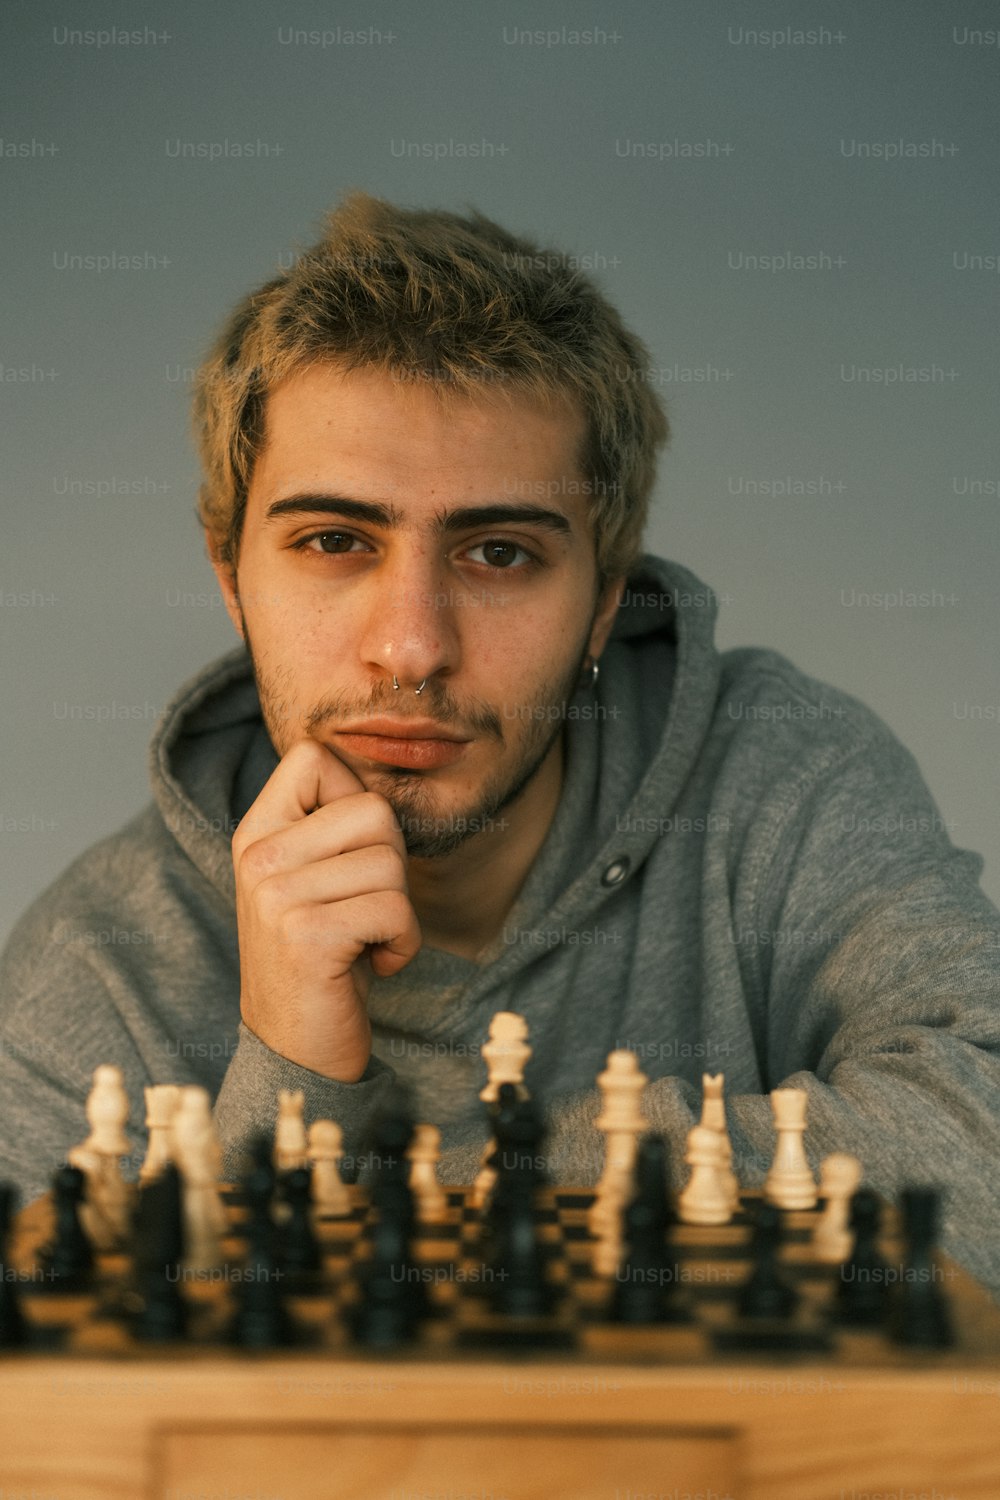 チェス盤の前に座っている男